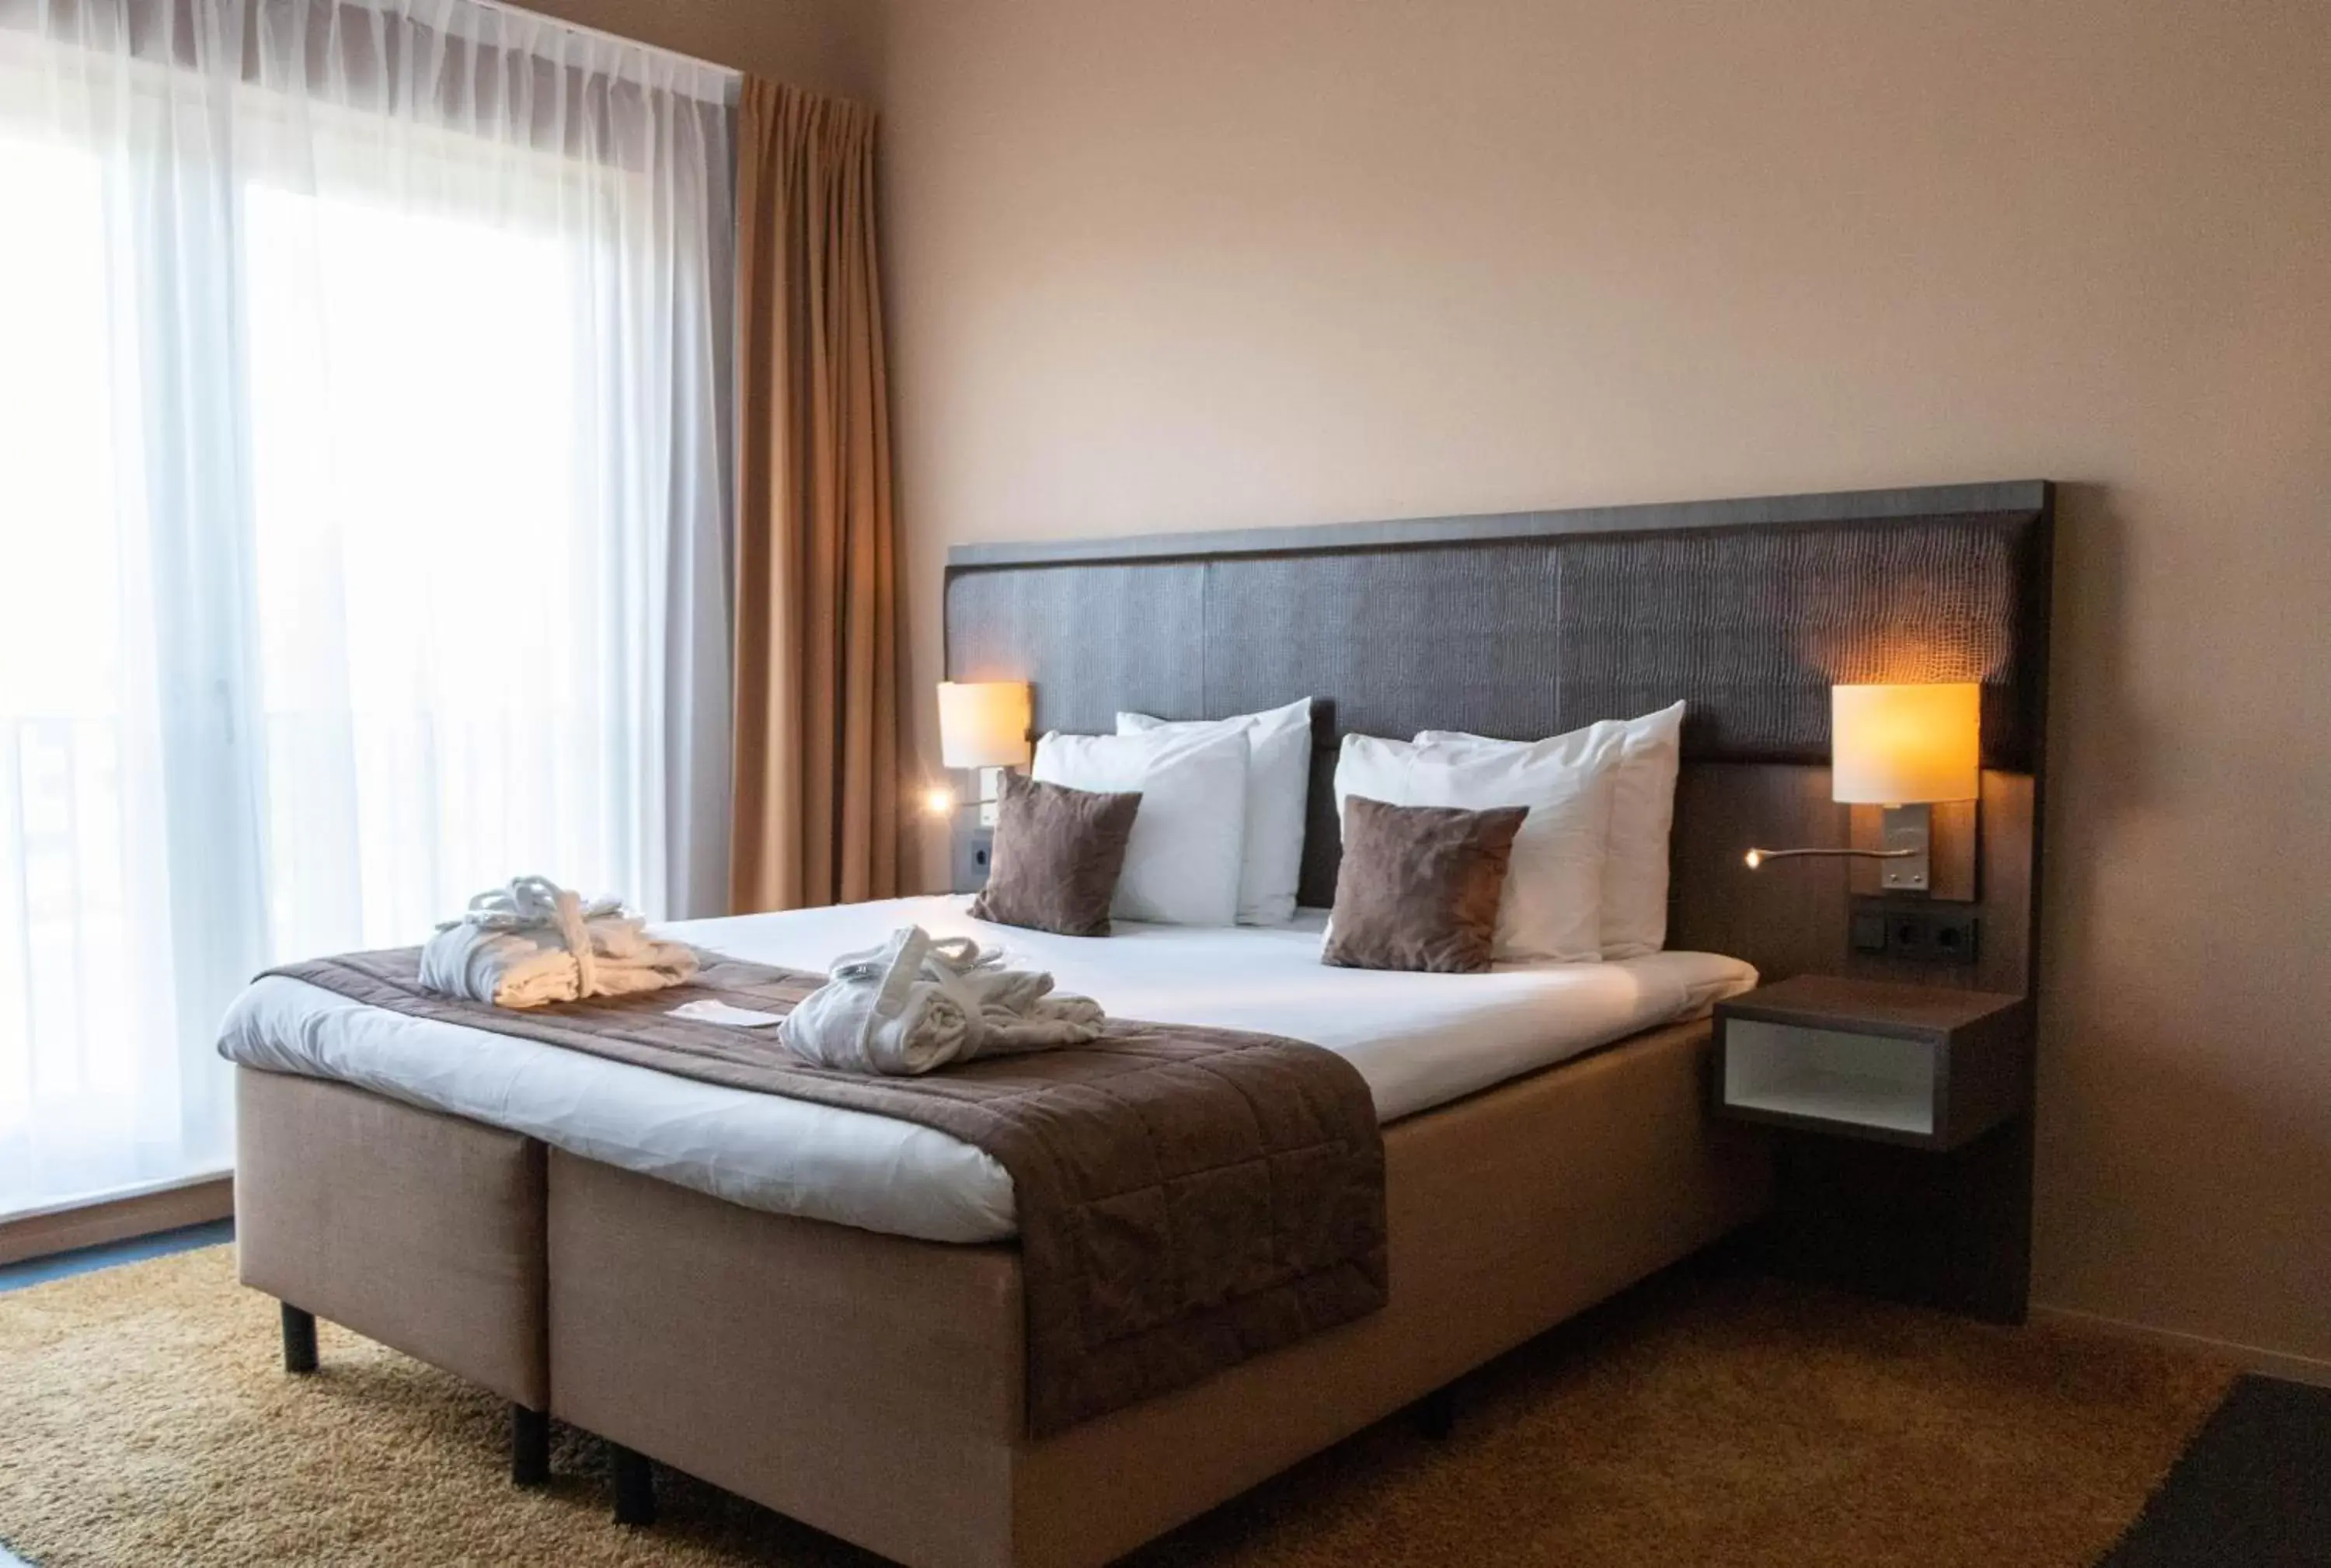 Bed in Best Western Plus City Hotel Gouda